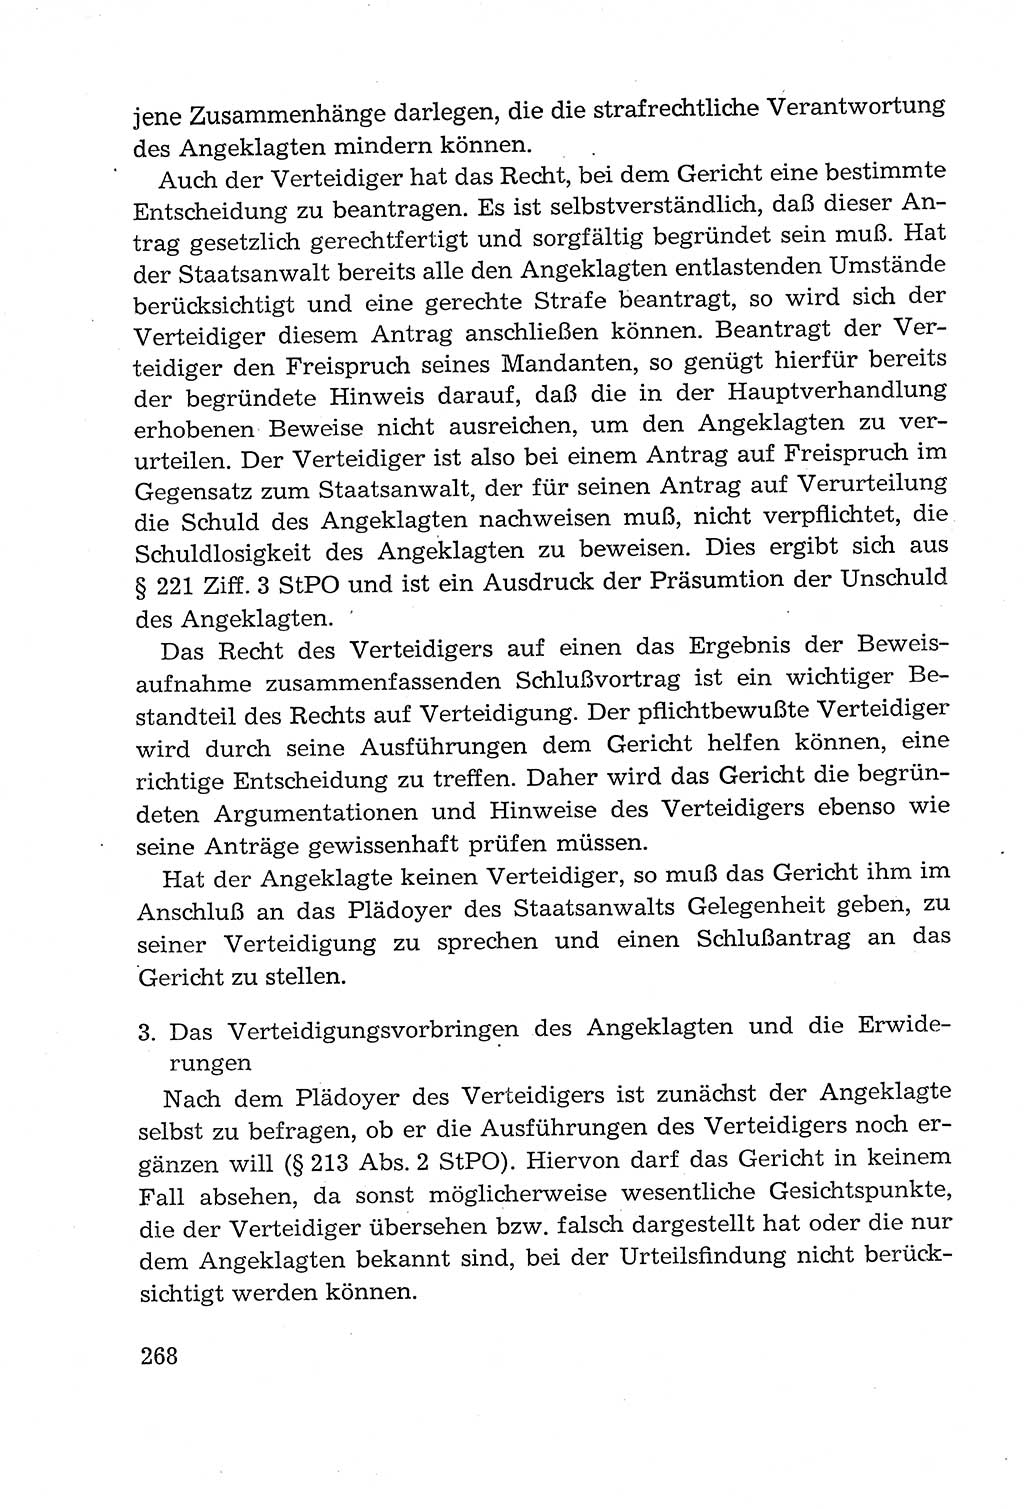 Leitfaden des Strafprozeßrechts der Deutschen Demokratischen Republik (DDR) 1959, Seite 268 (LF StPR DDR 1959, S. 268)